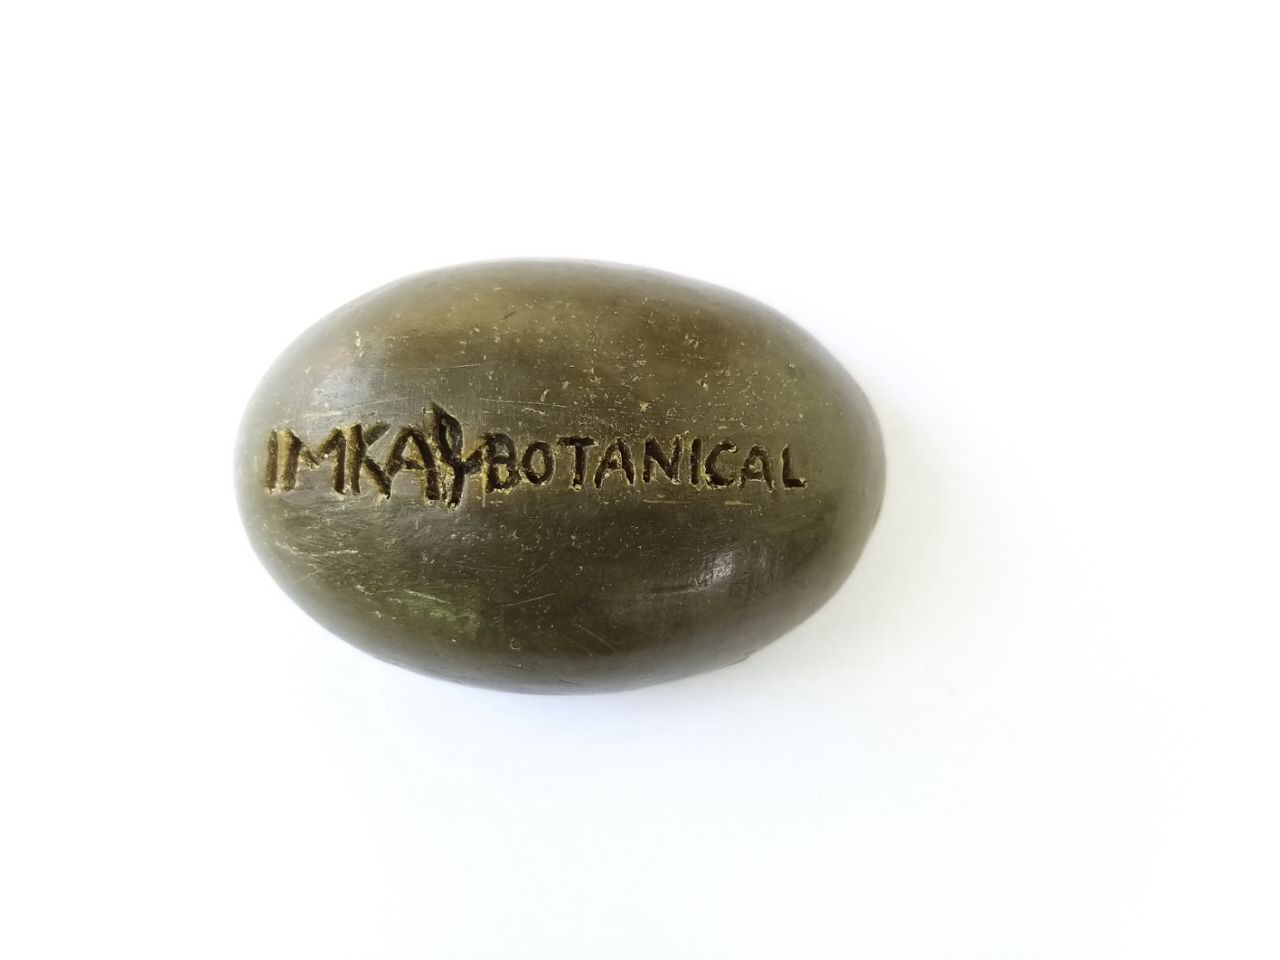 IMKA BOTANICAL - EXFOLIATE SOAP Enriched with Organic Morniga Oil - e 30 gr (Small)